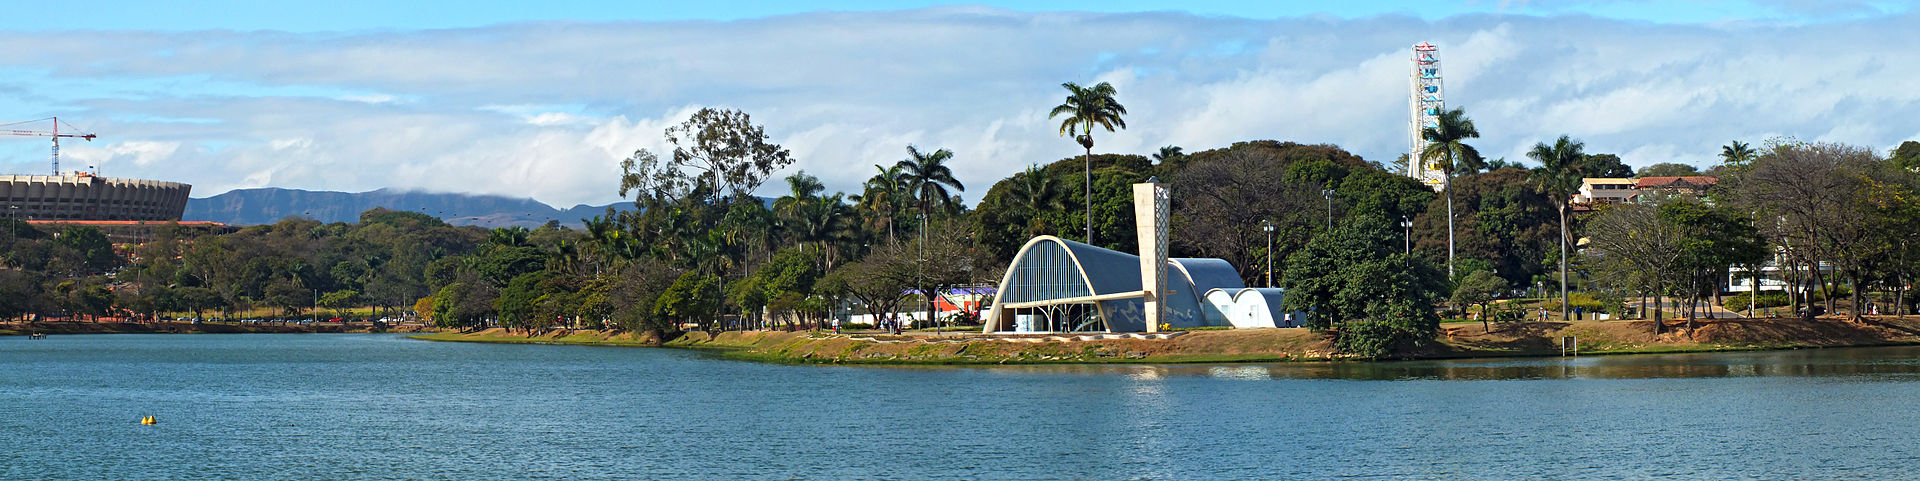 Igreja de São Francisco de Assis, no conjunto arquitetônico da Pampulha, em Belo Horizonte, uma das mais importantes criações de Oscar Niemeyer (Foto: André Borges Lopes)